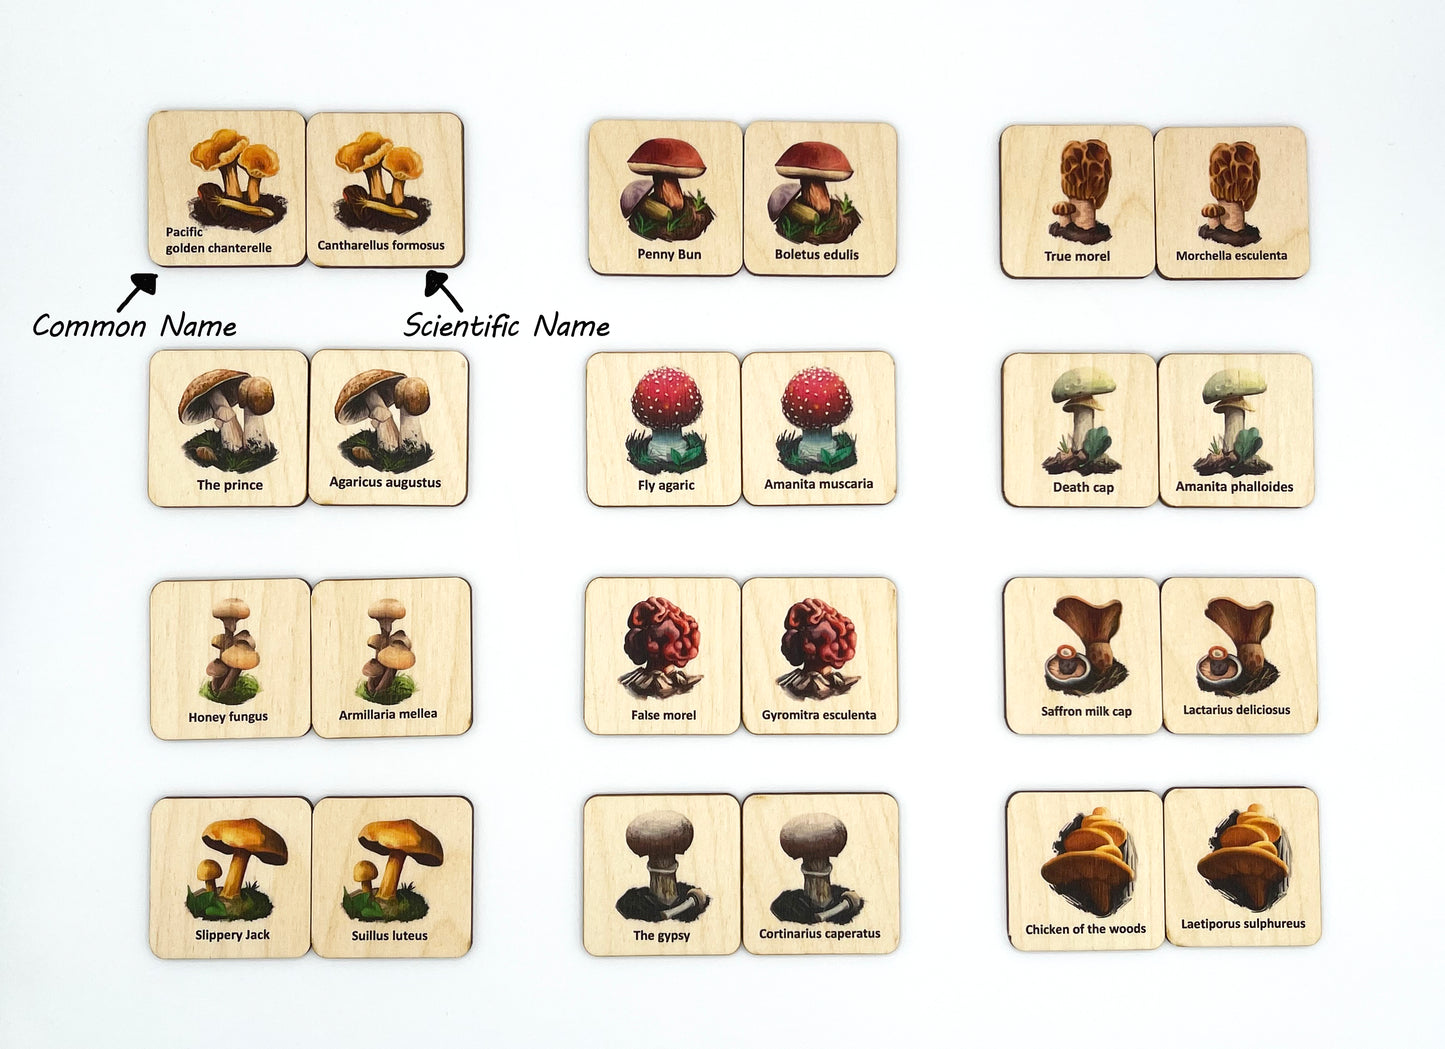 Wood Mushroom Fungi memory game